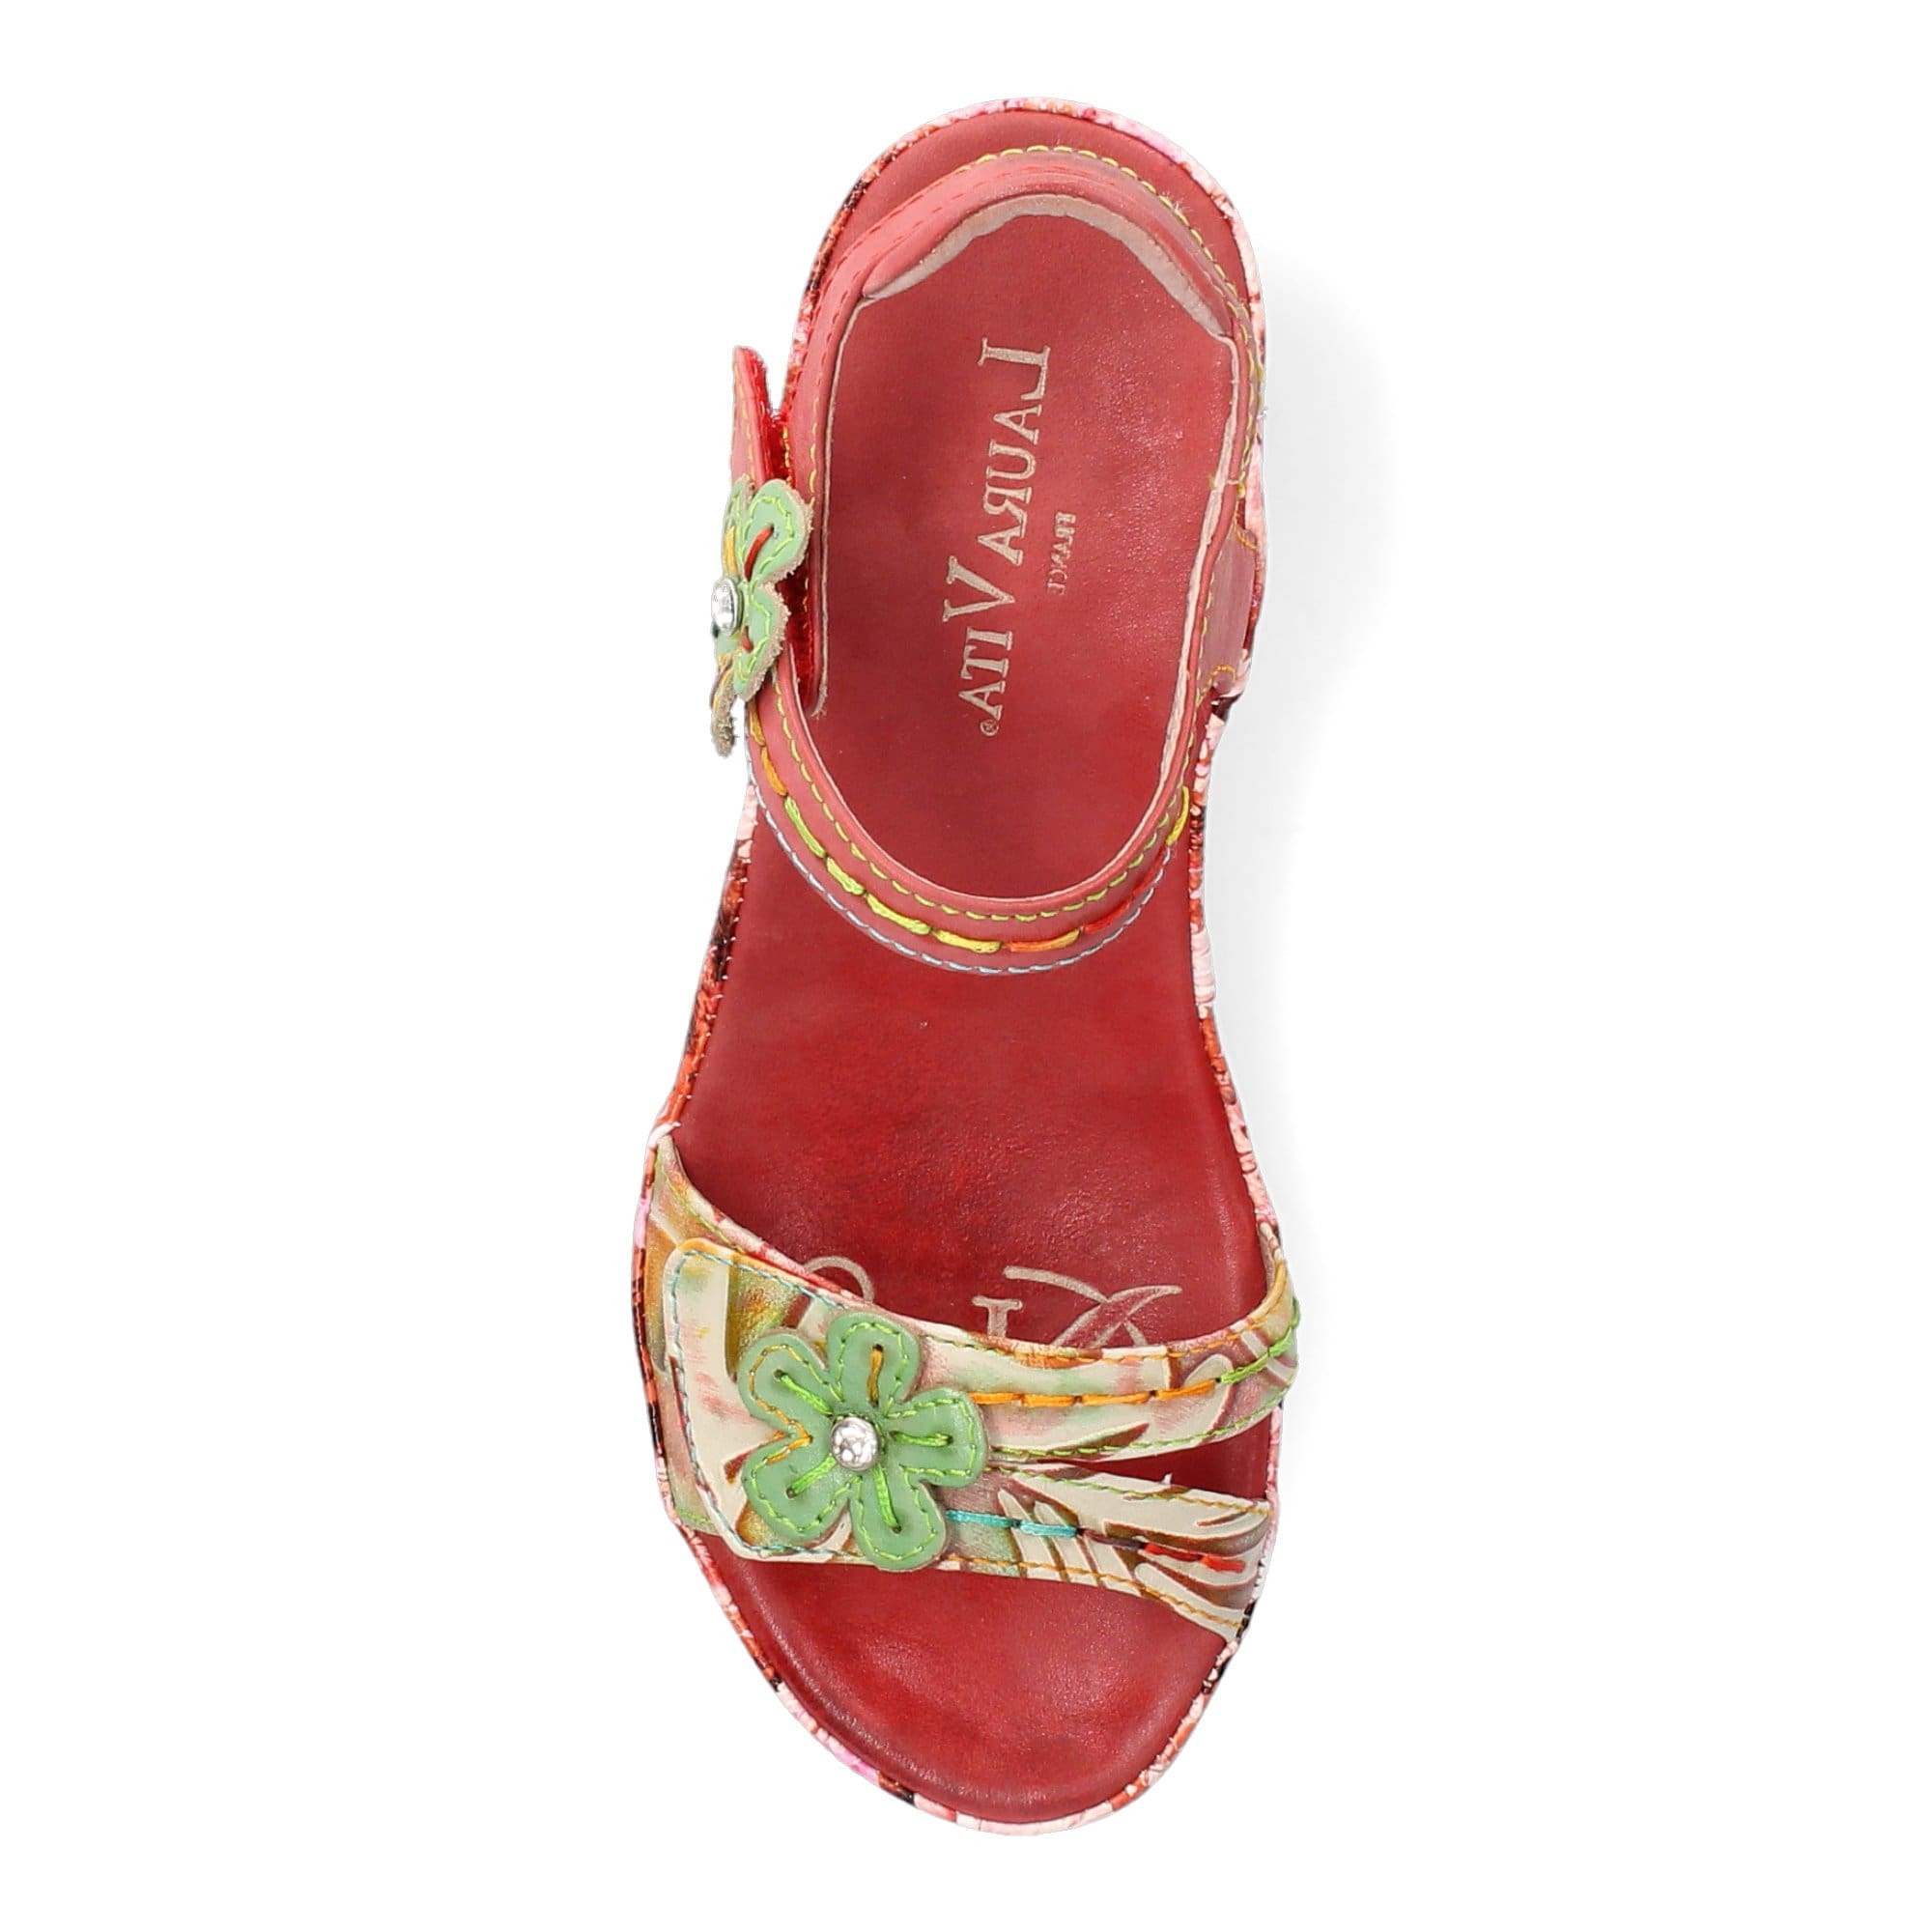 FACDIAO 2621 Shoes - Sandal